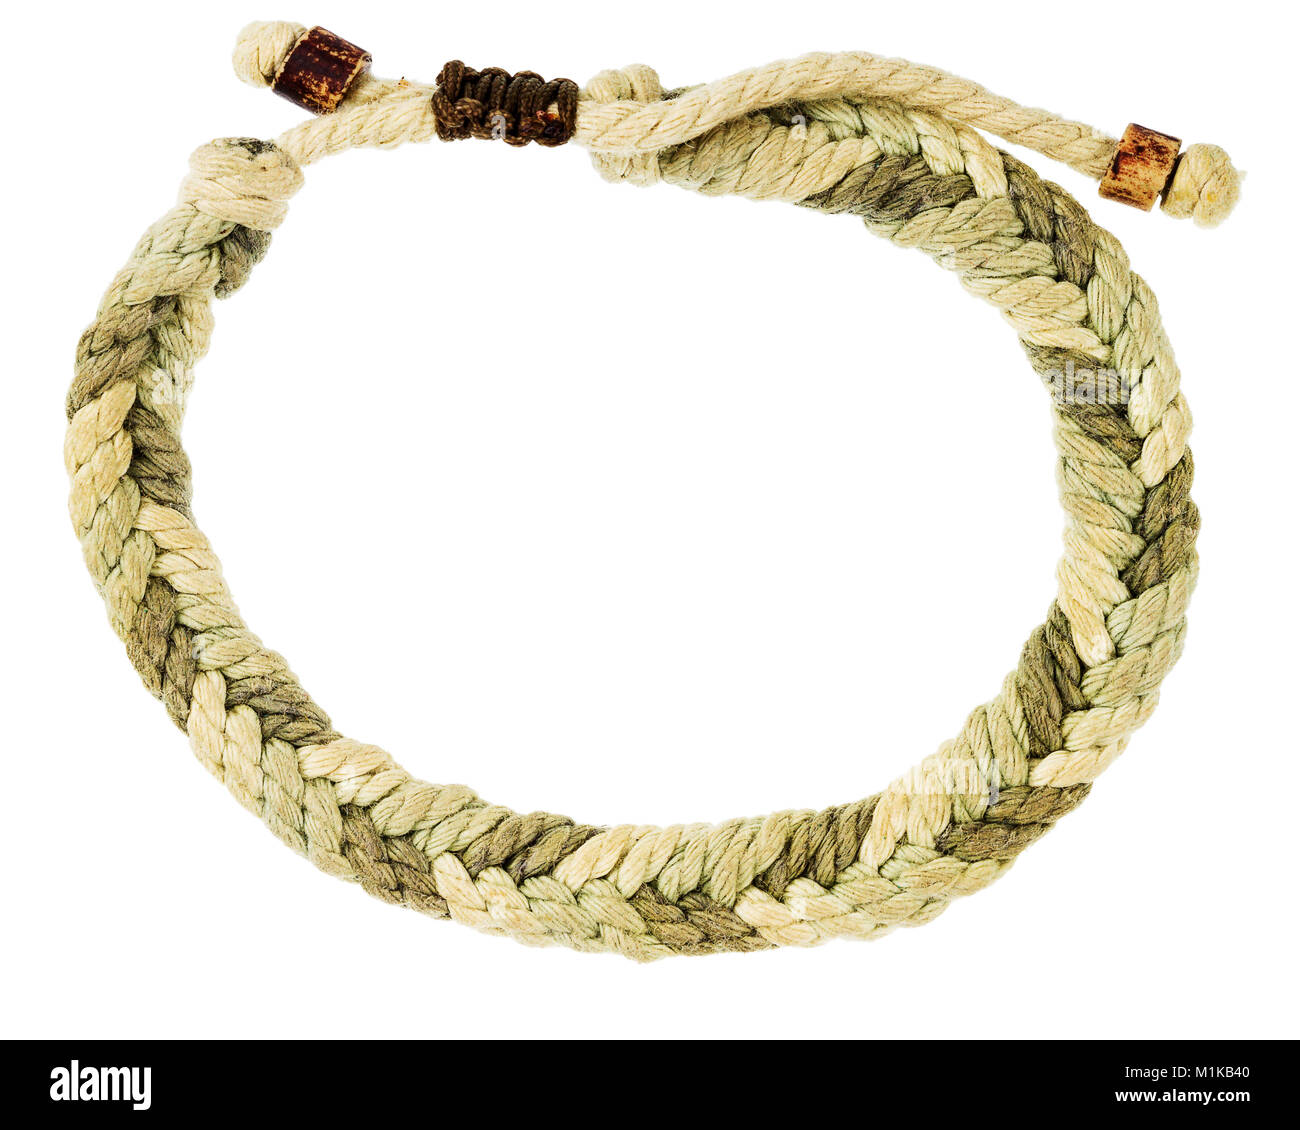 Braided rope bracelet isolated on white background Stock Photo